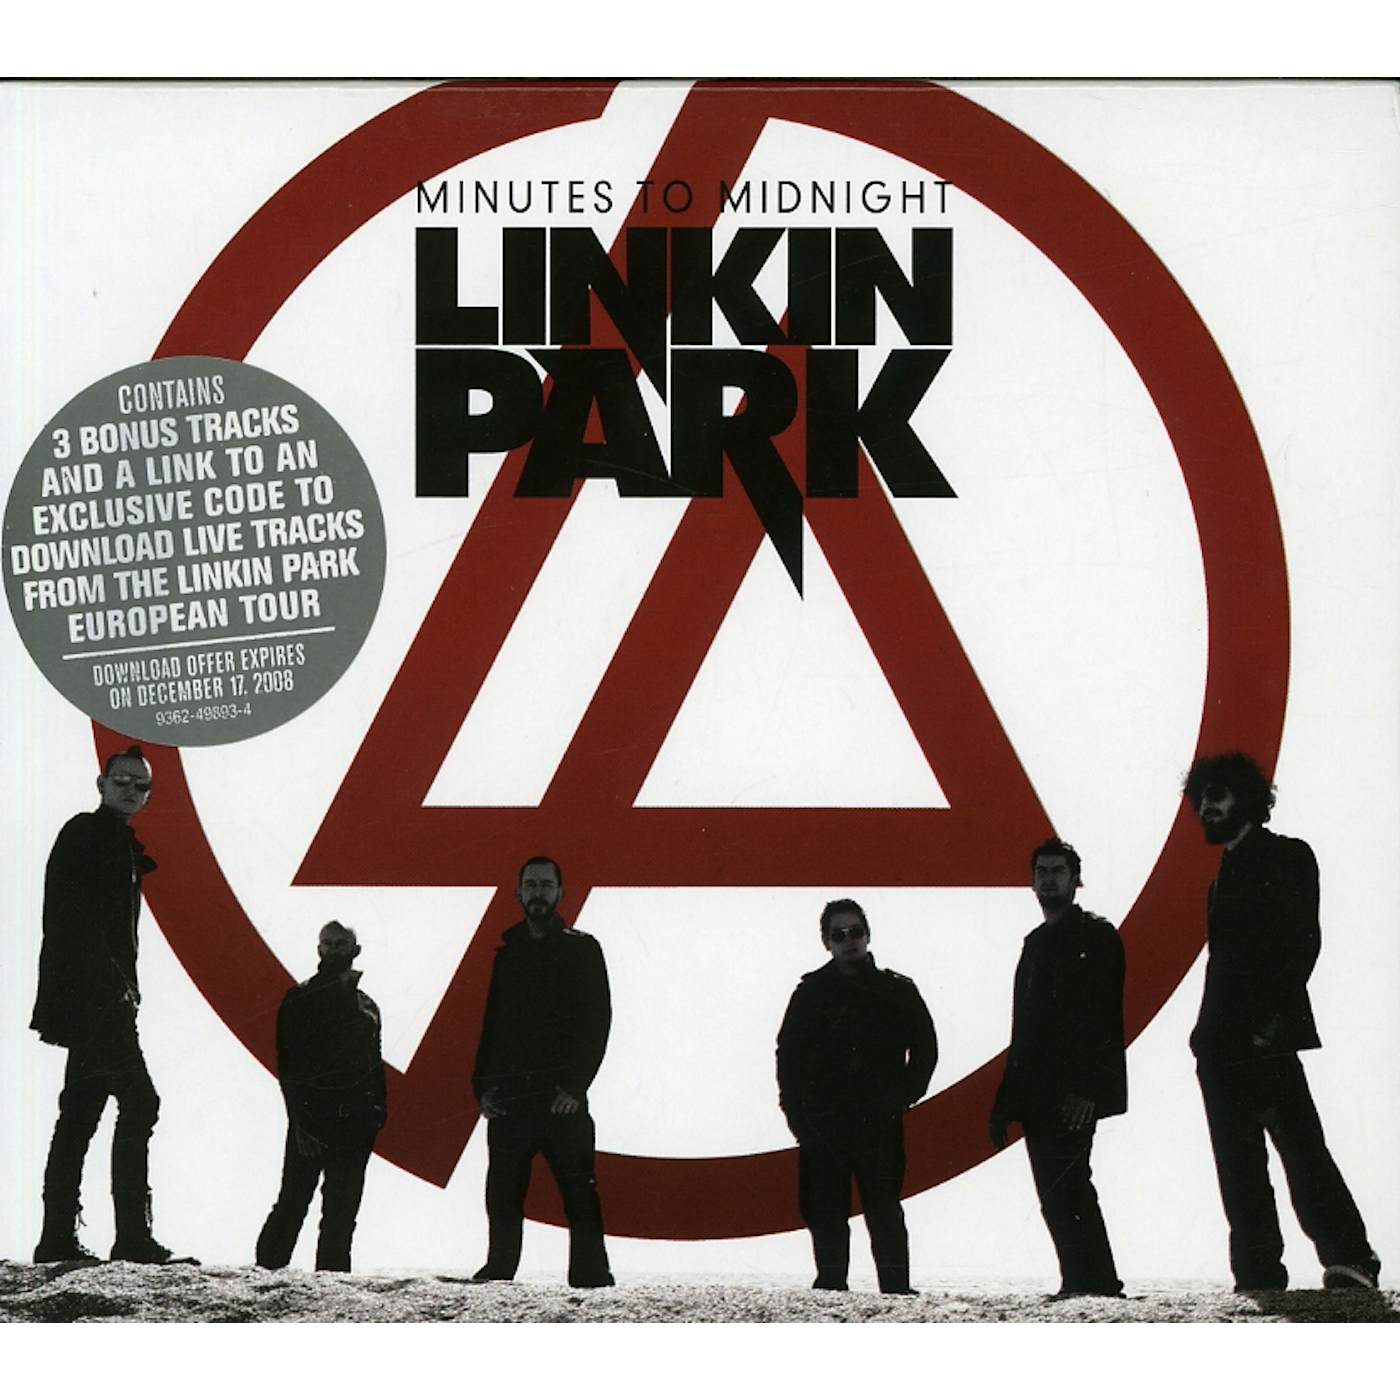 Минута обложка. Линкин парк minutes to Midnight. Minutes to Midnight Linkin Park обложка 2007. Linkin Park album minutes to Midnight. Постеры Linkin Park minutes to Midnight.